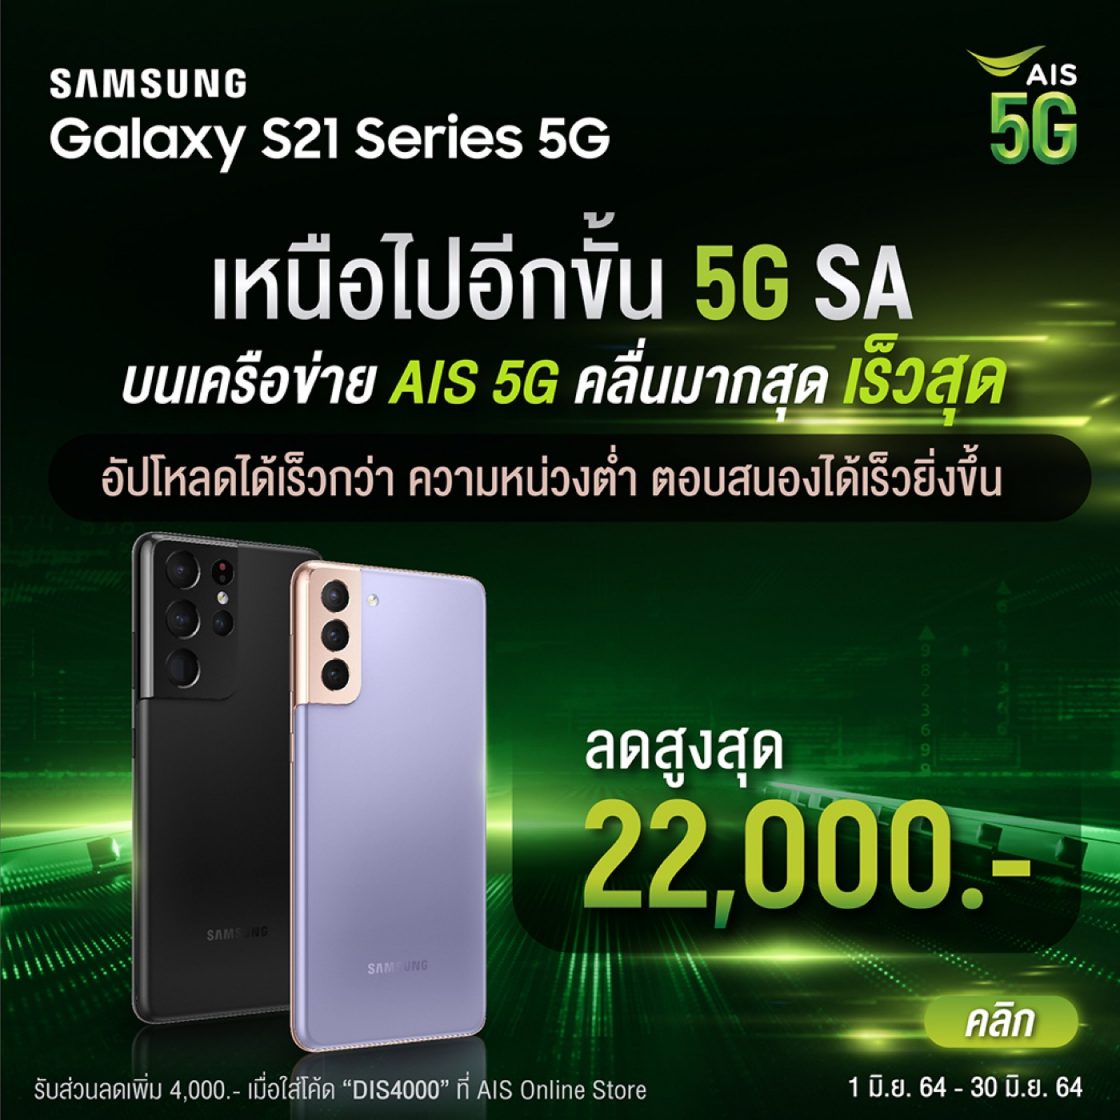 Ais 5g จับมือซัมซุง โชว์ศักยภาพ Samsung Galaxy S21 Series 5g บน